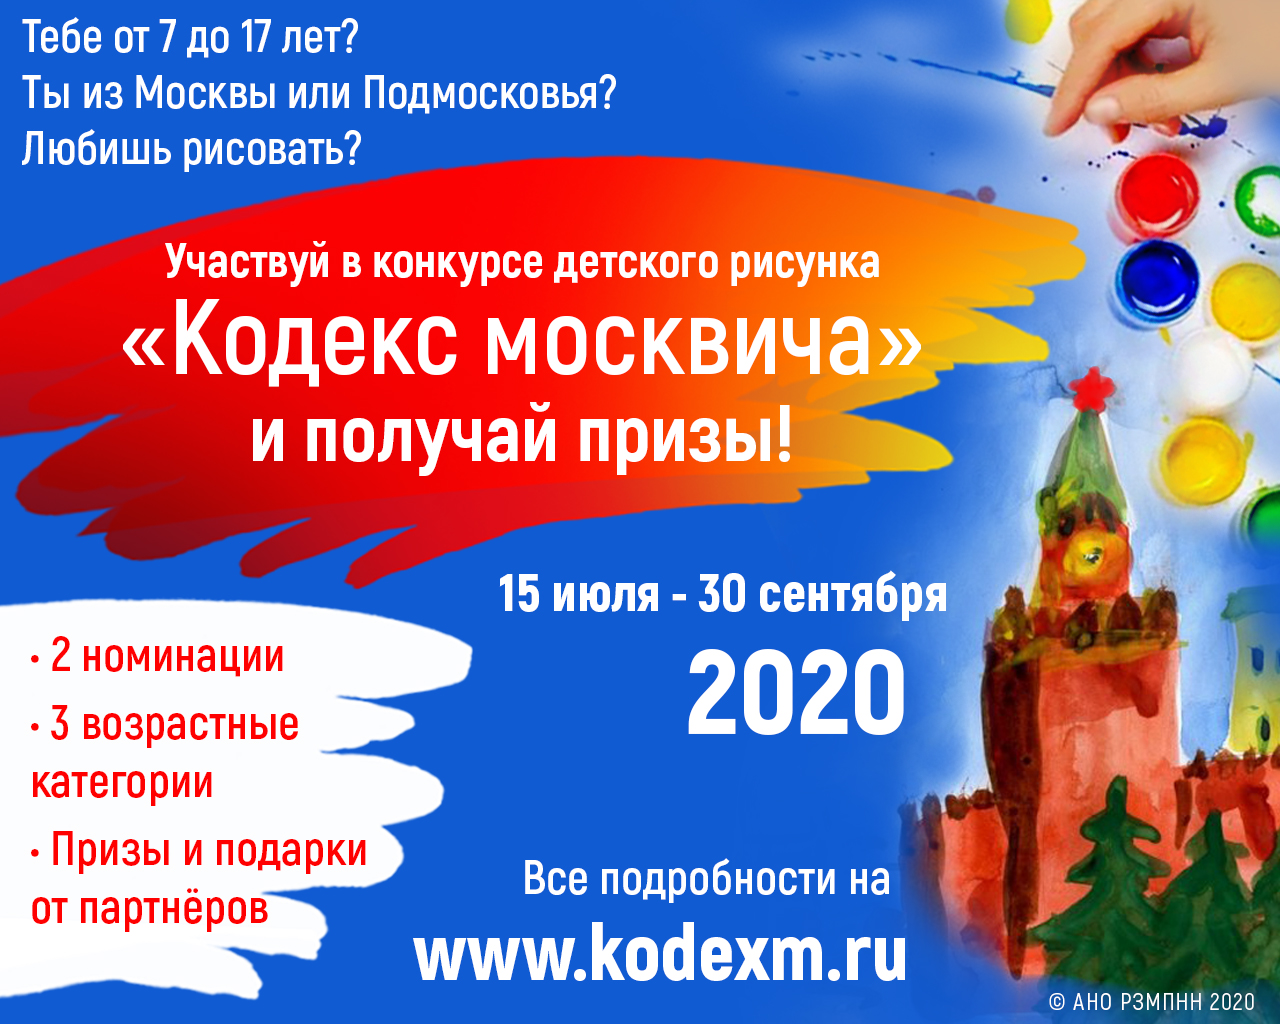 Конкурс детского рисунка по тематике брошюры «Кодекс москвича, или как жить счастливо в многонациональном городе»